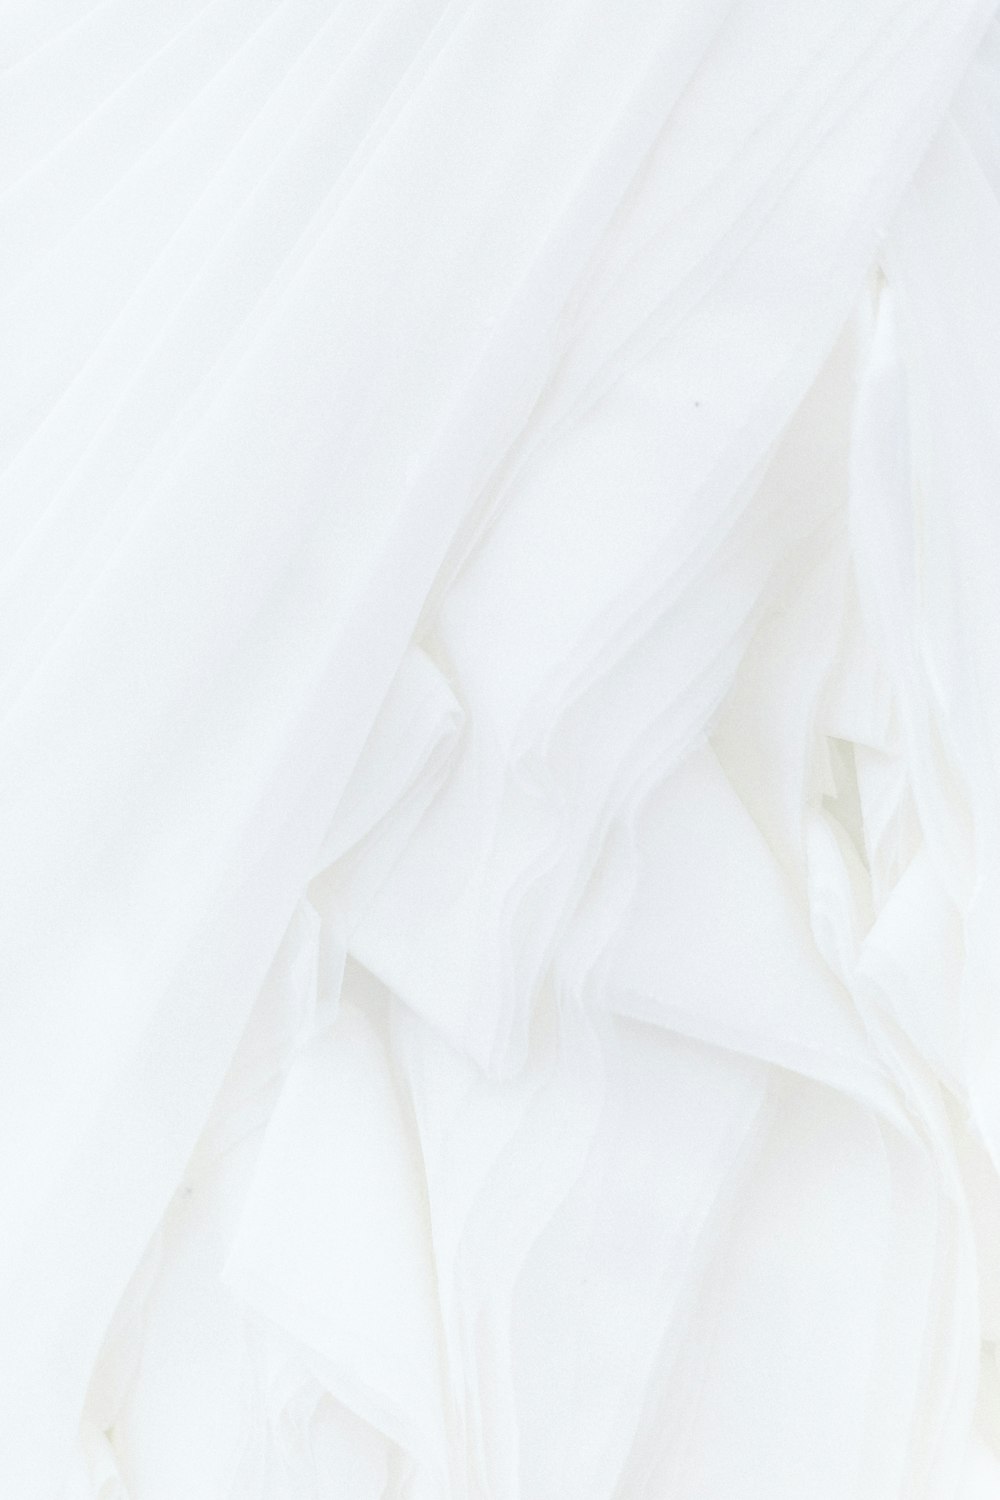 Textil blanco en la fotografía de primer plano